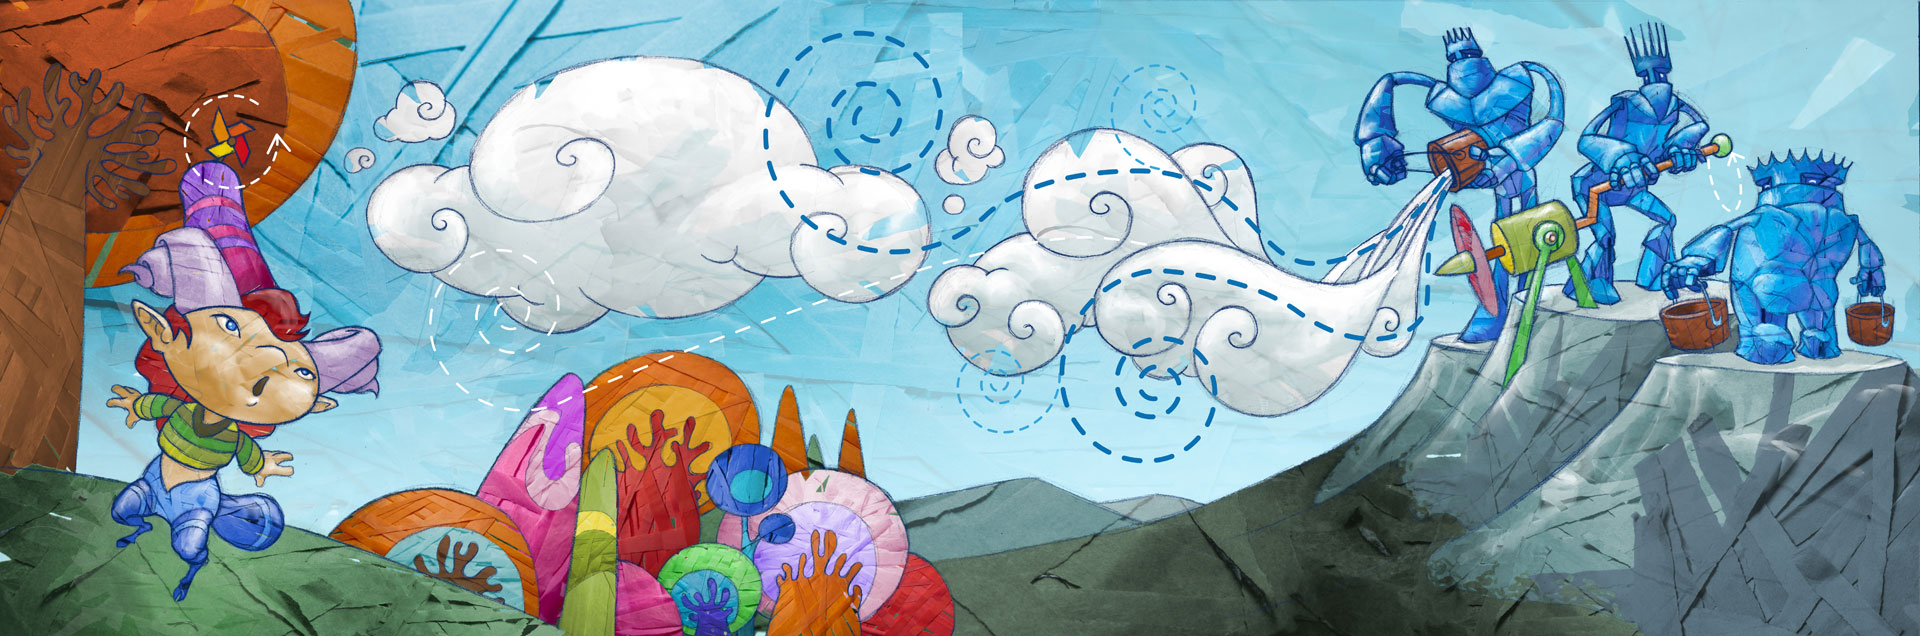 Creatical; Koo y los Pastores de Nubes